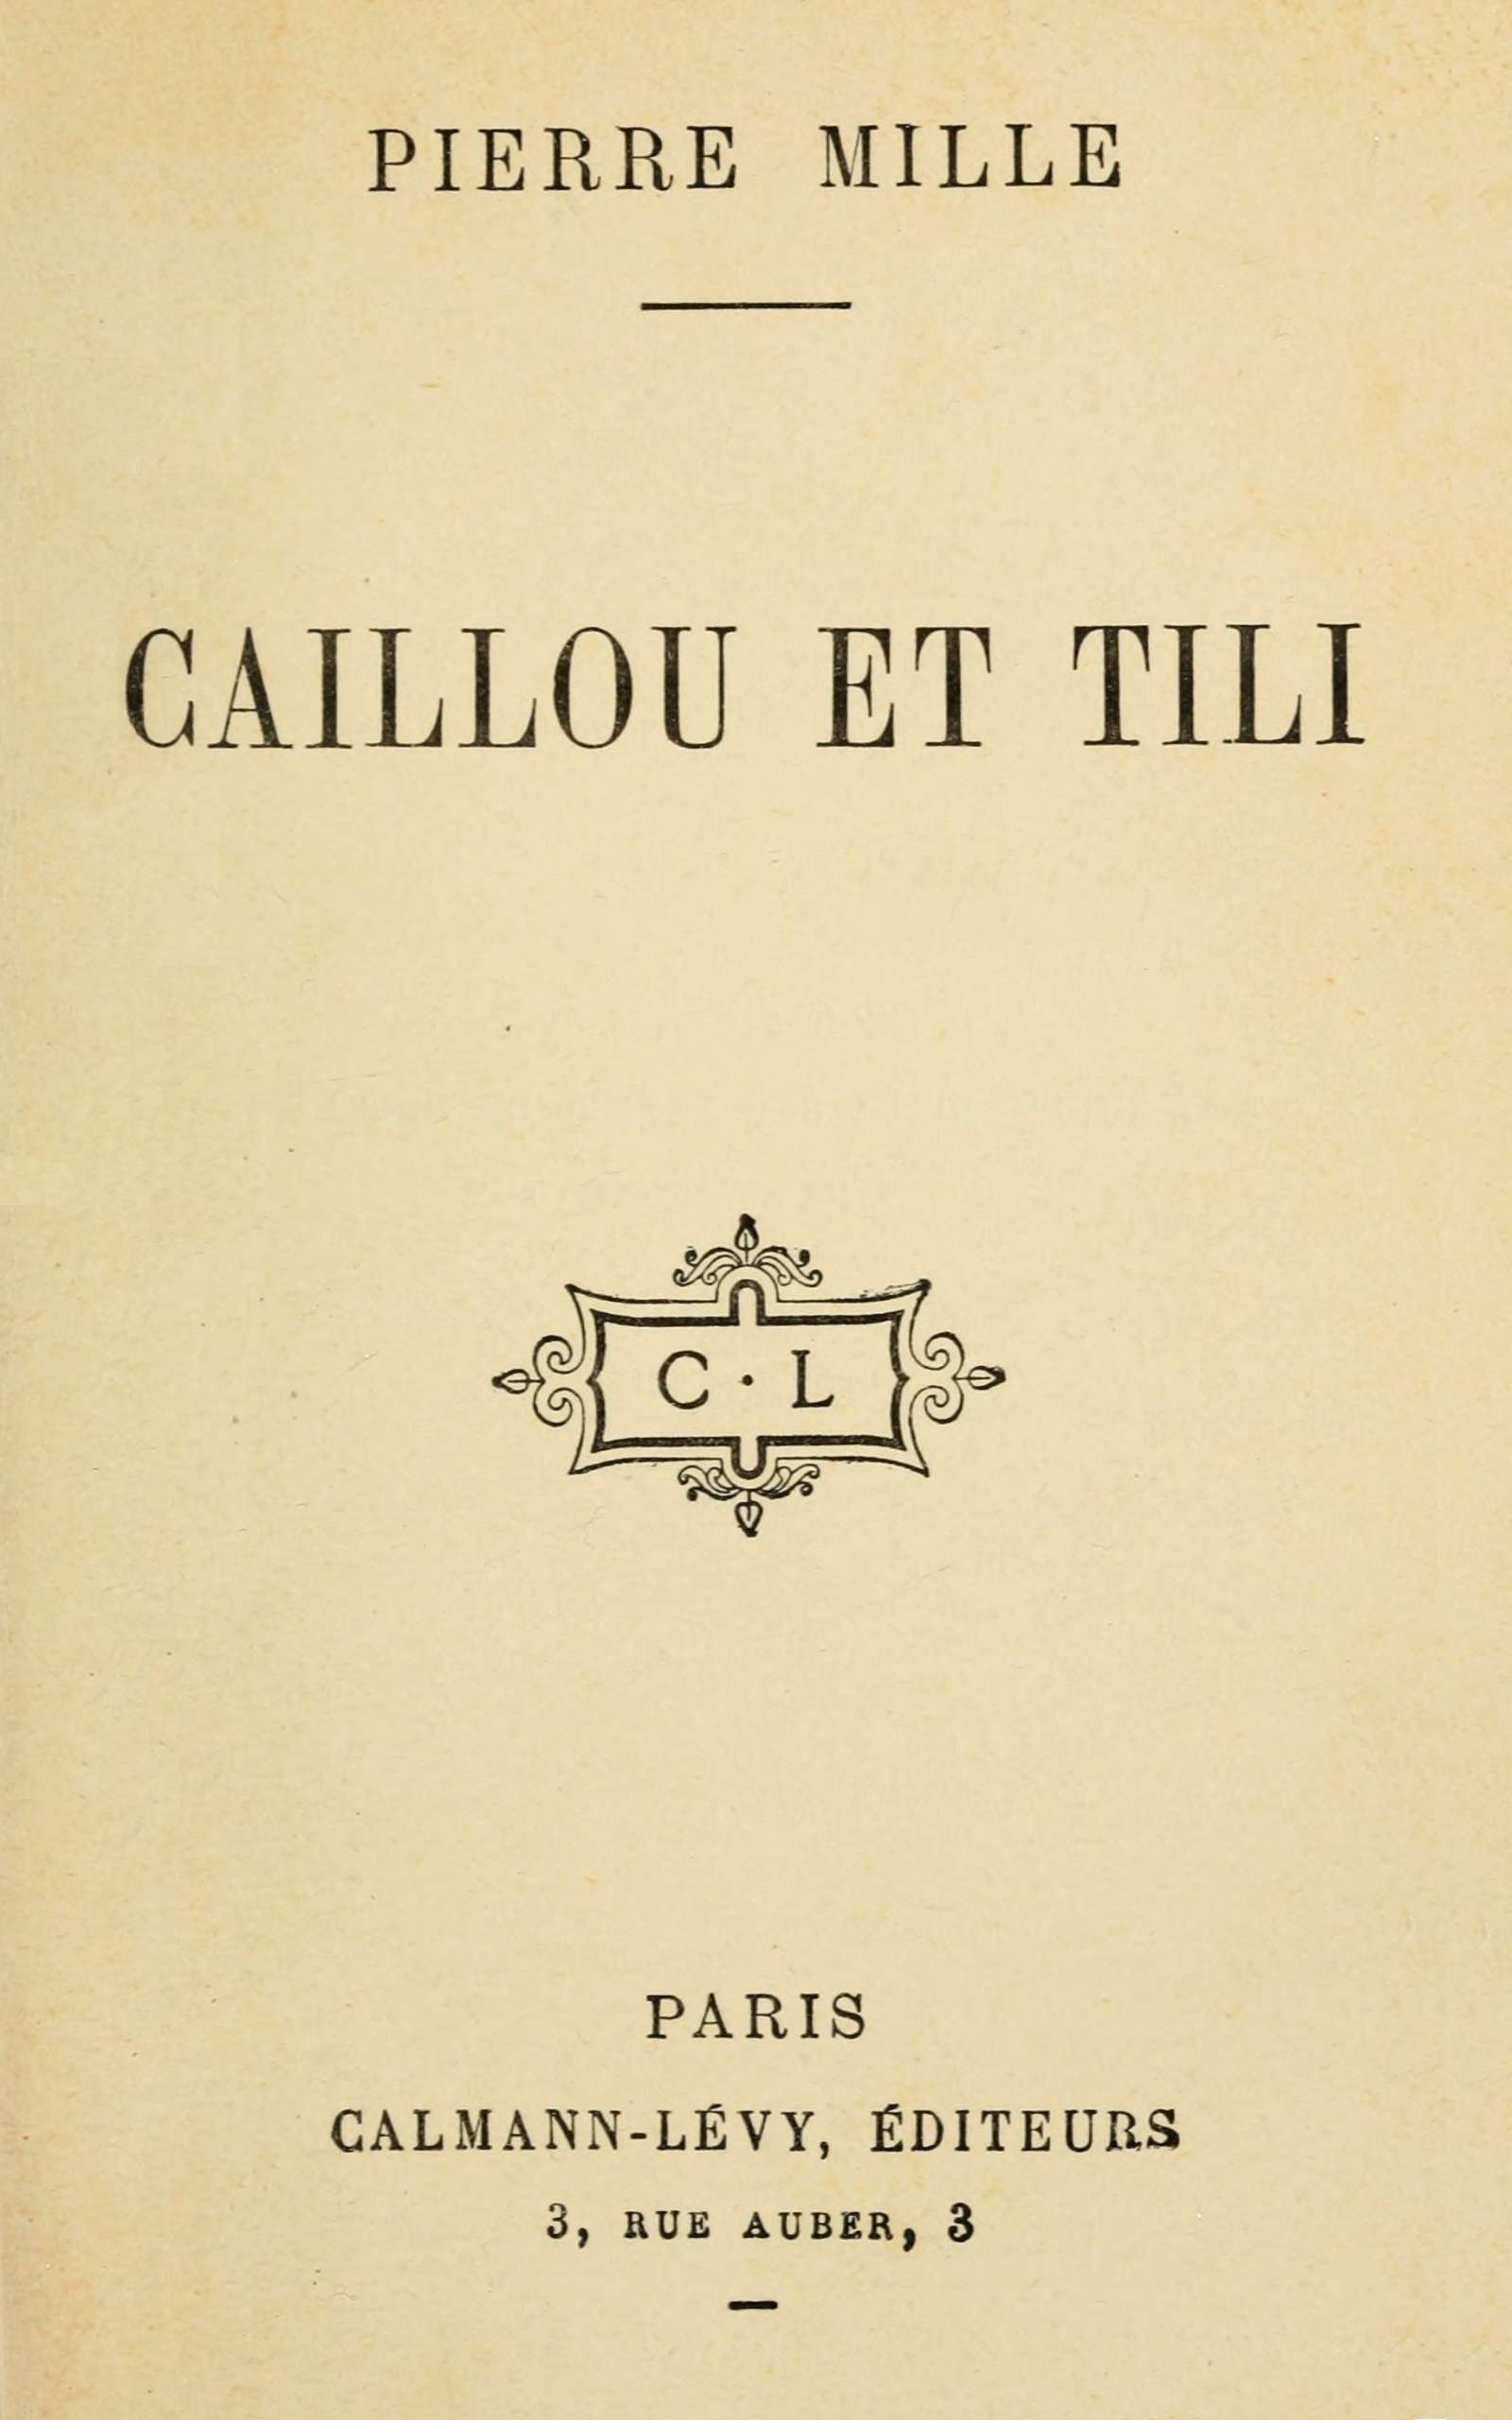 Caillou et Tili